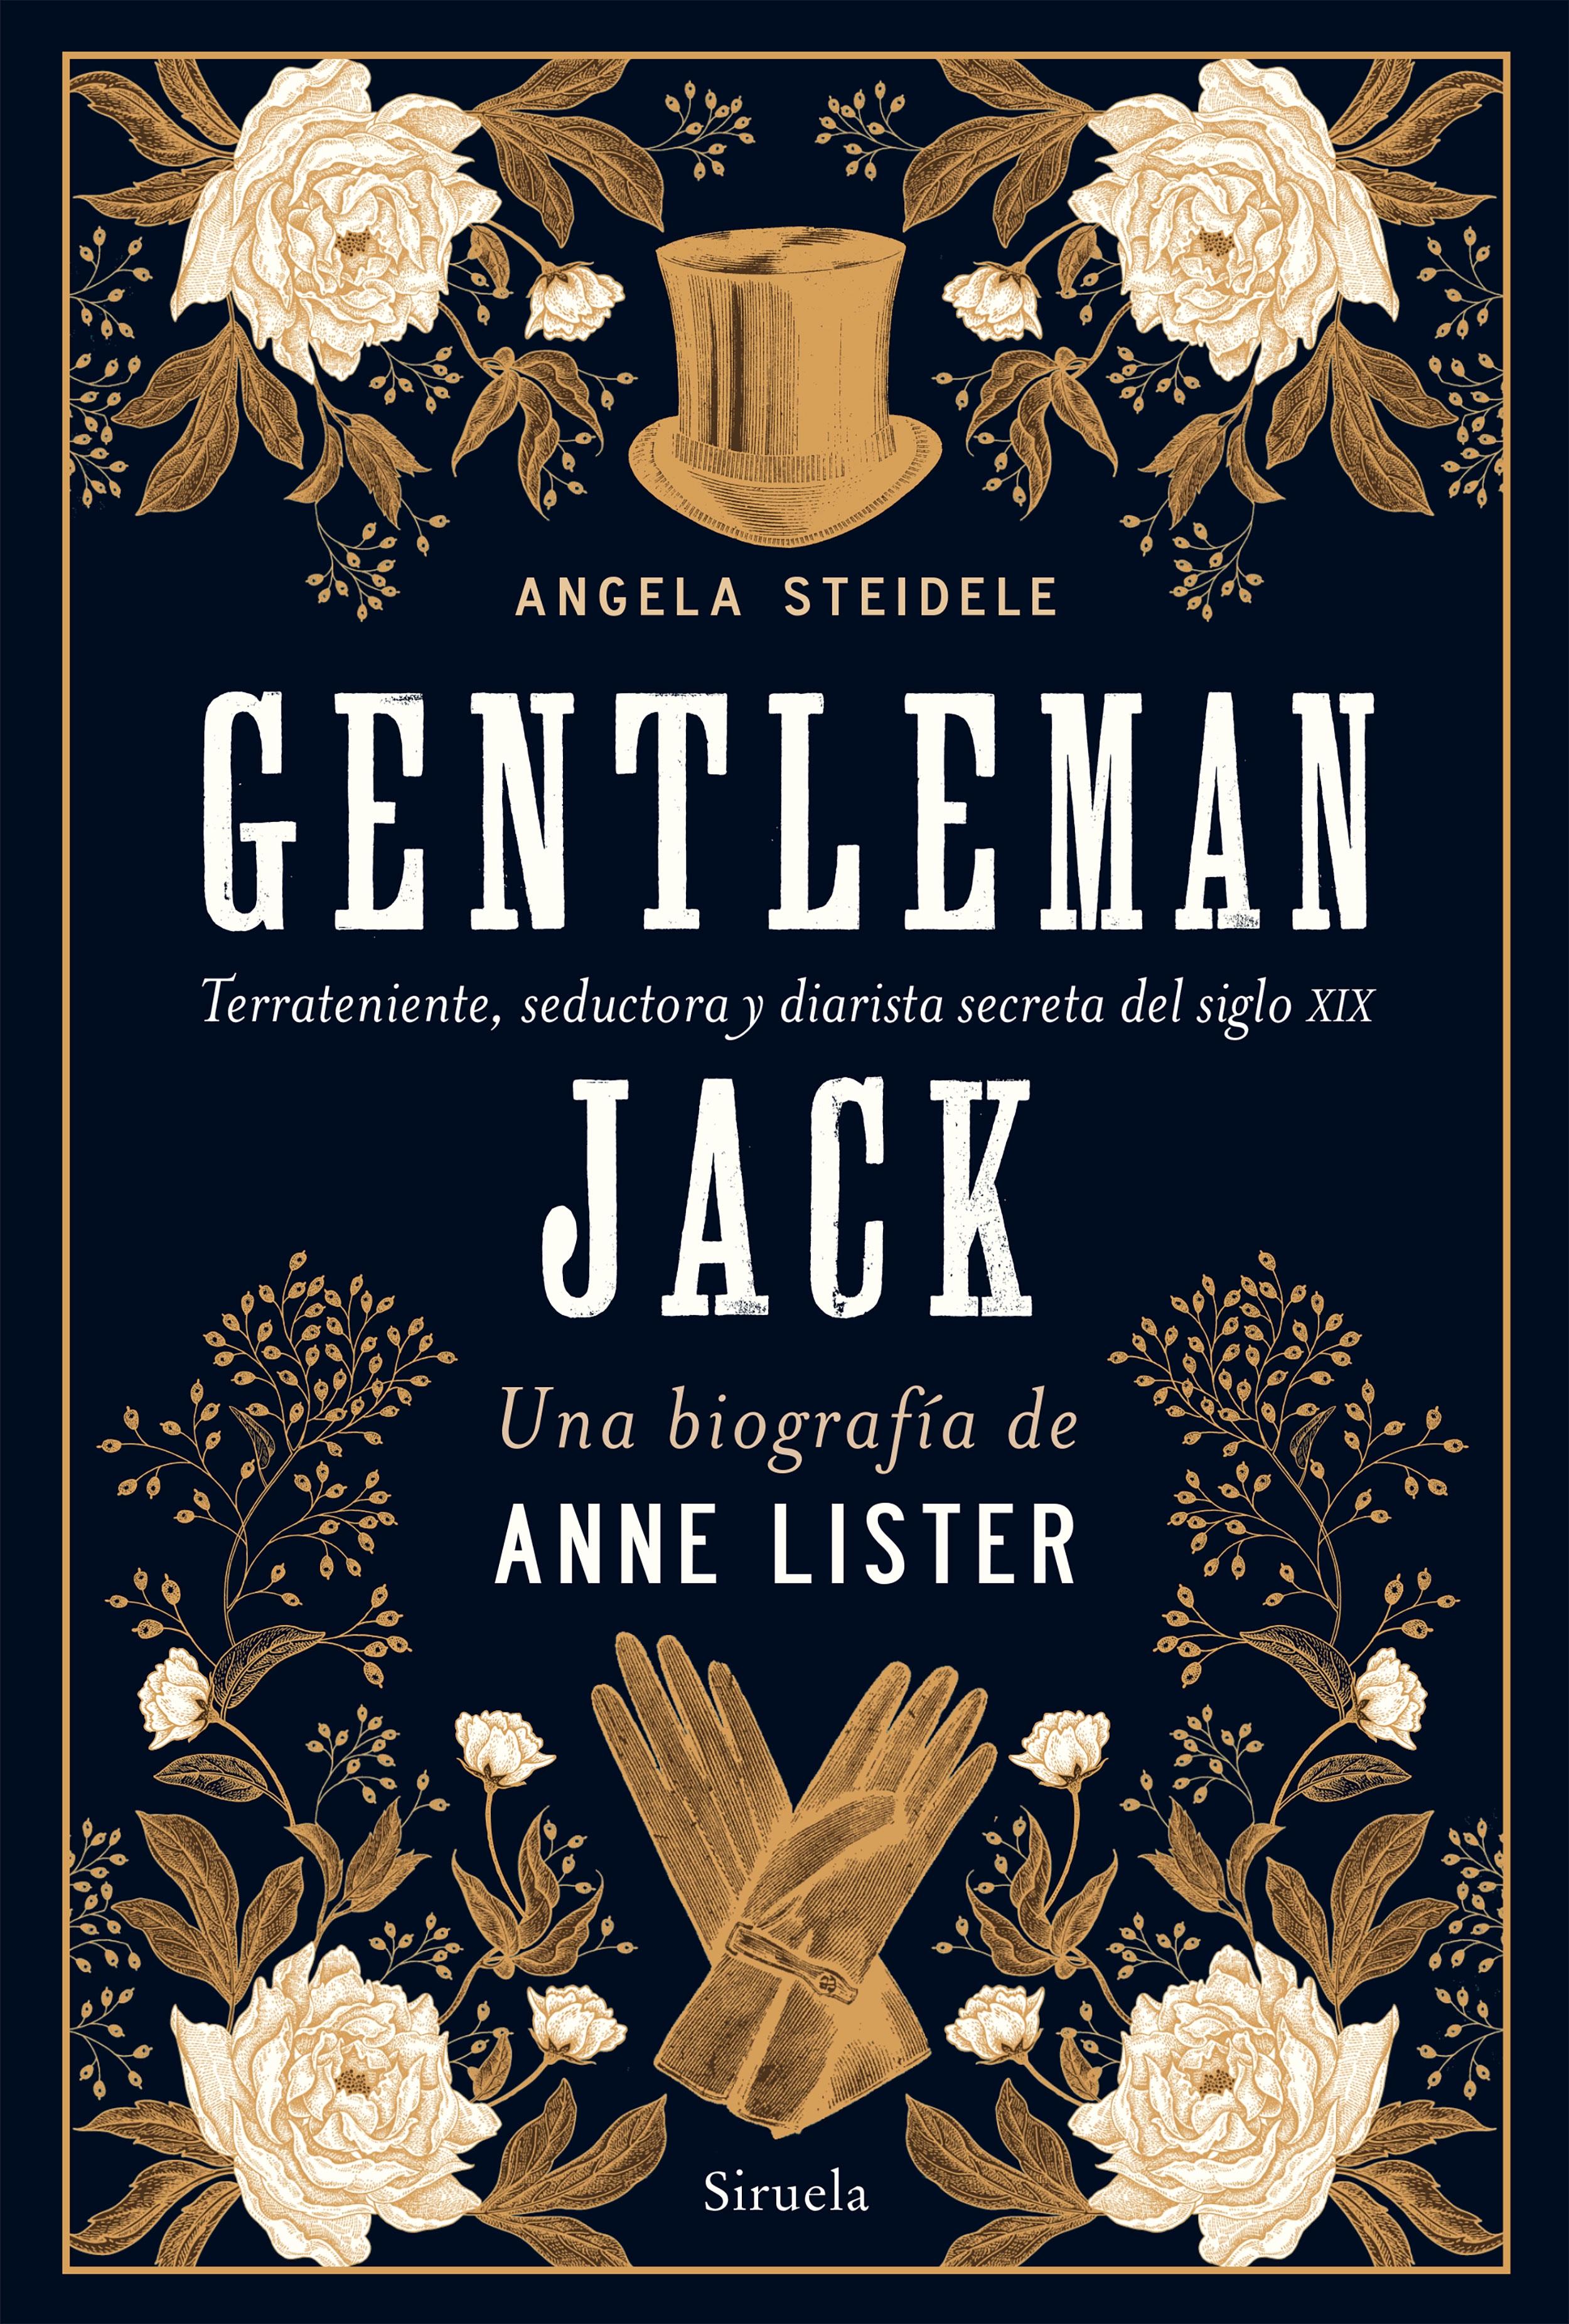 Gentleman Jack. Una biografía de Anne Lister "Terrateniente, seductora y diarista secreta del siglo XIX". 